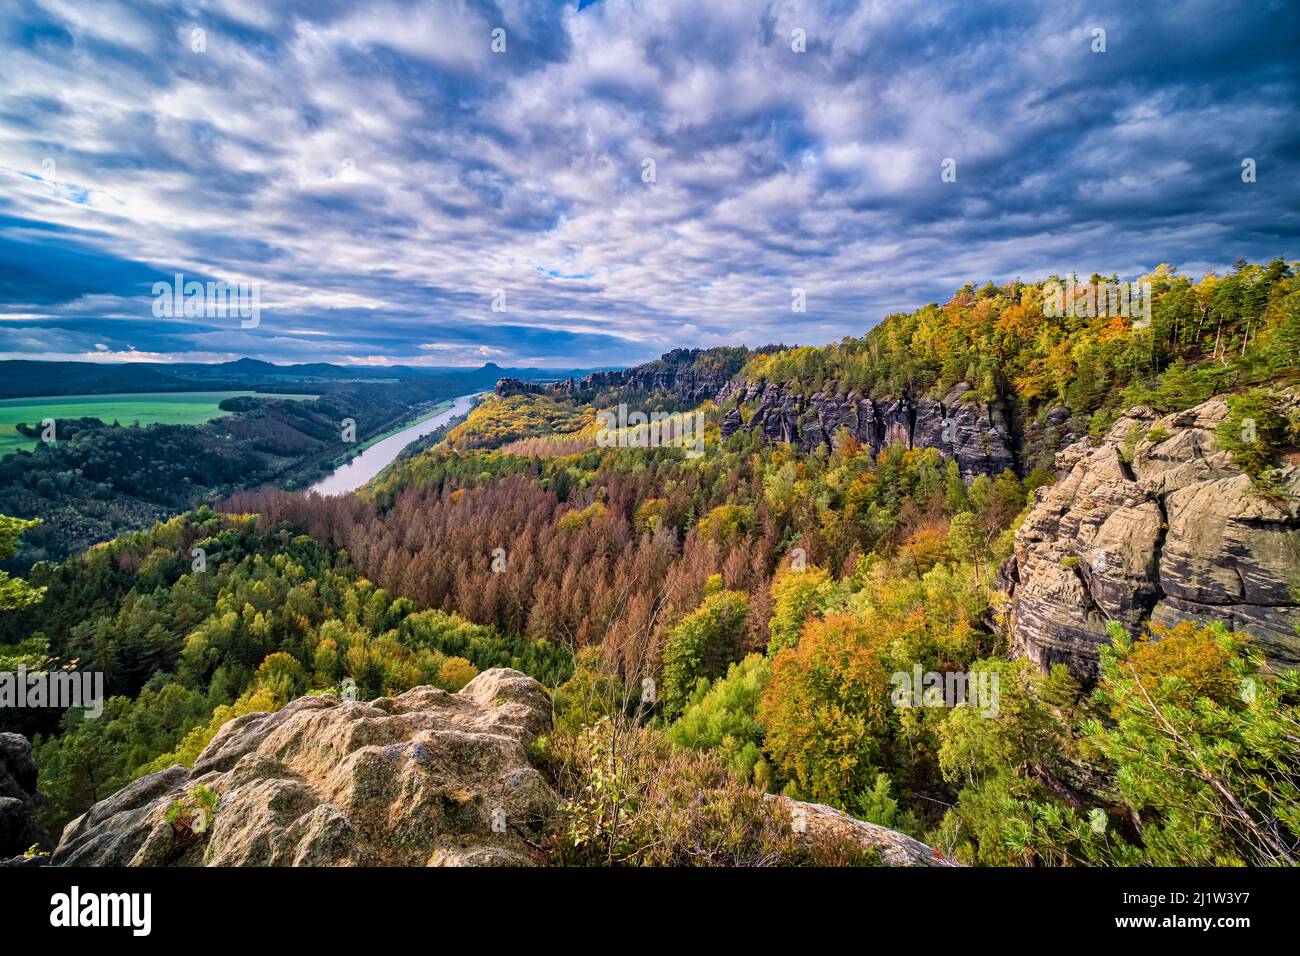 Landschaft mit Felsformationen, bunten Bäumen und dem Elbtal im Schrammsteine-Gebiet des Nationalparks Sächsische Schweiz im Herbst. Stockfoto